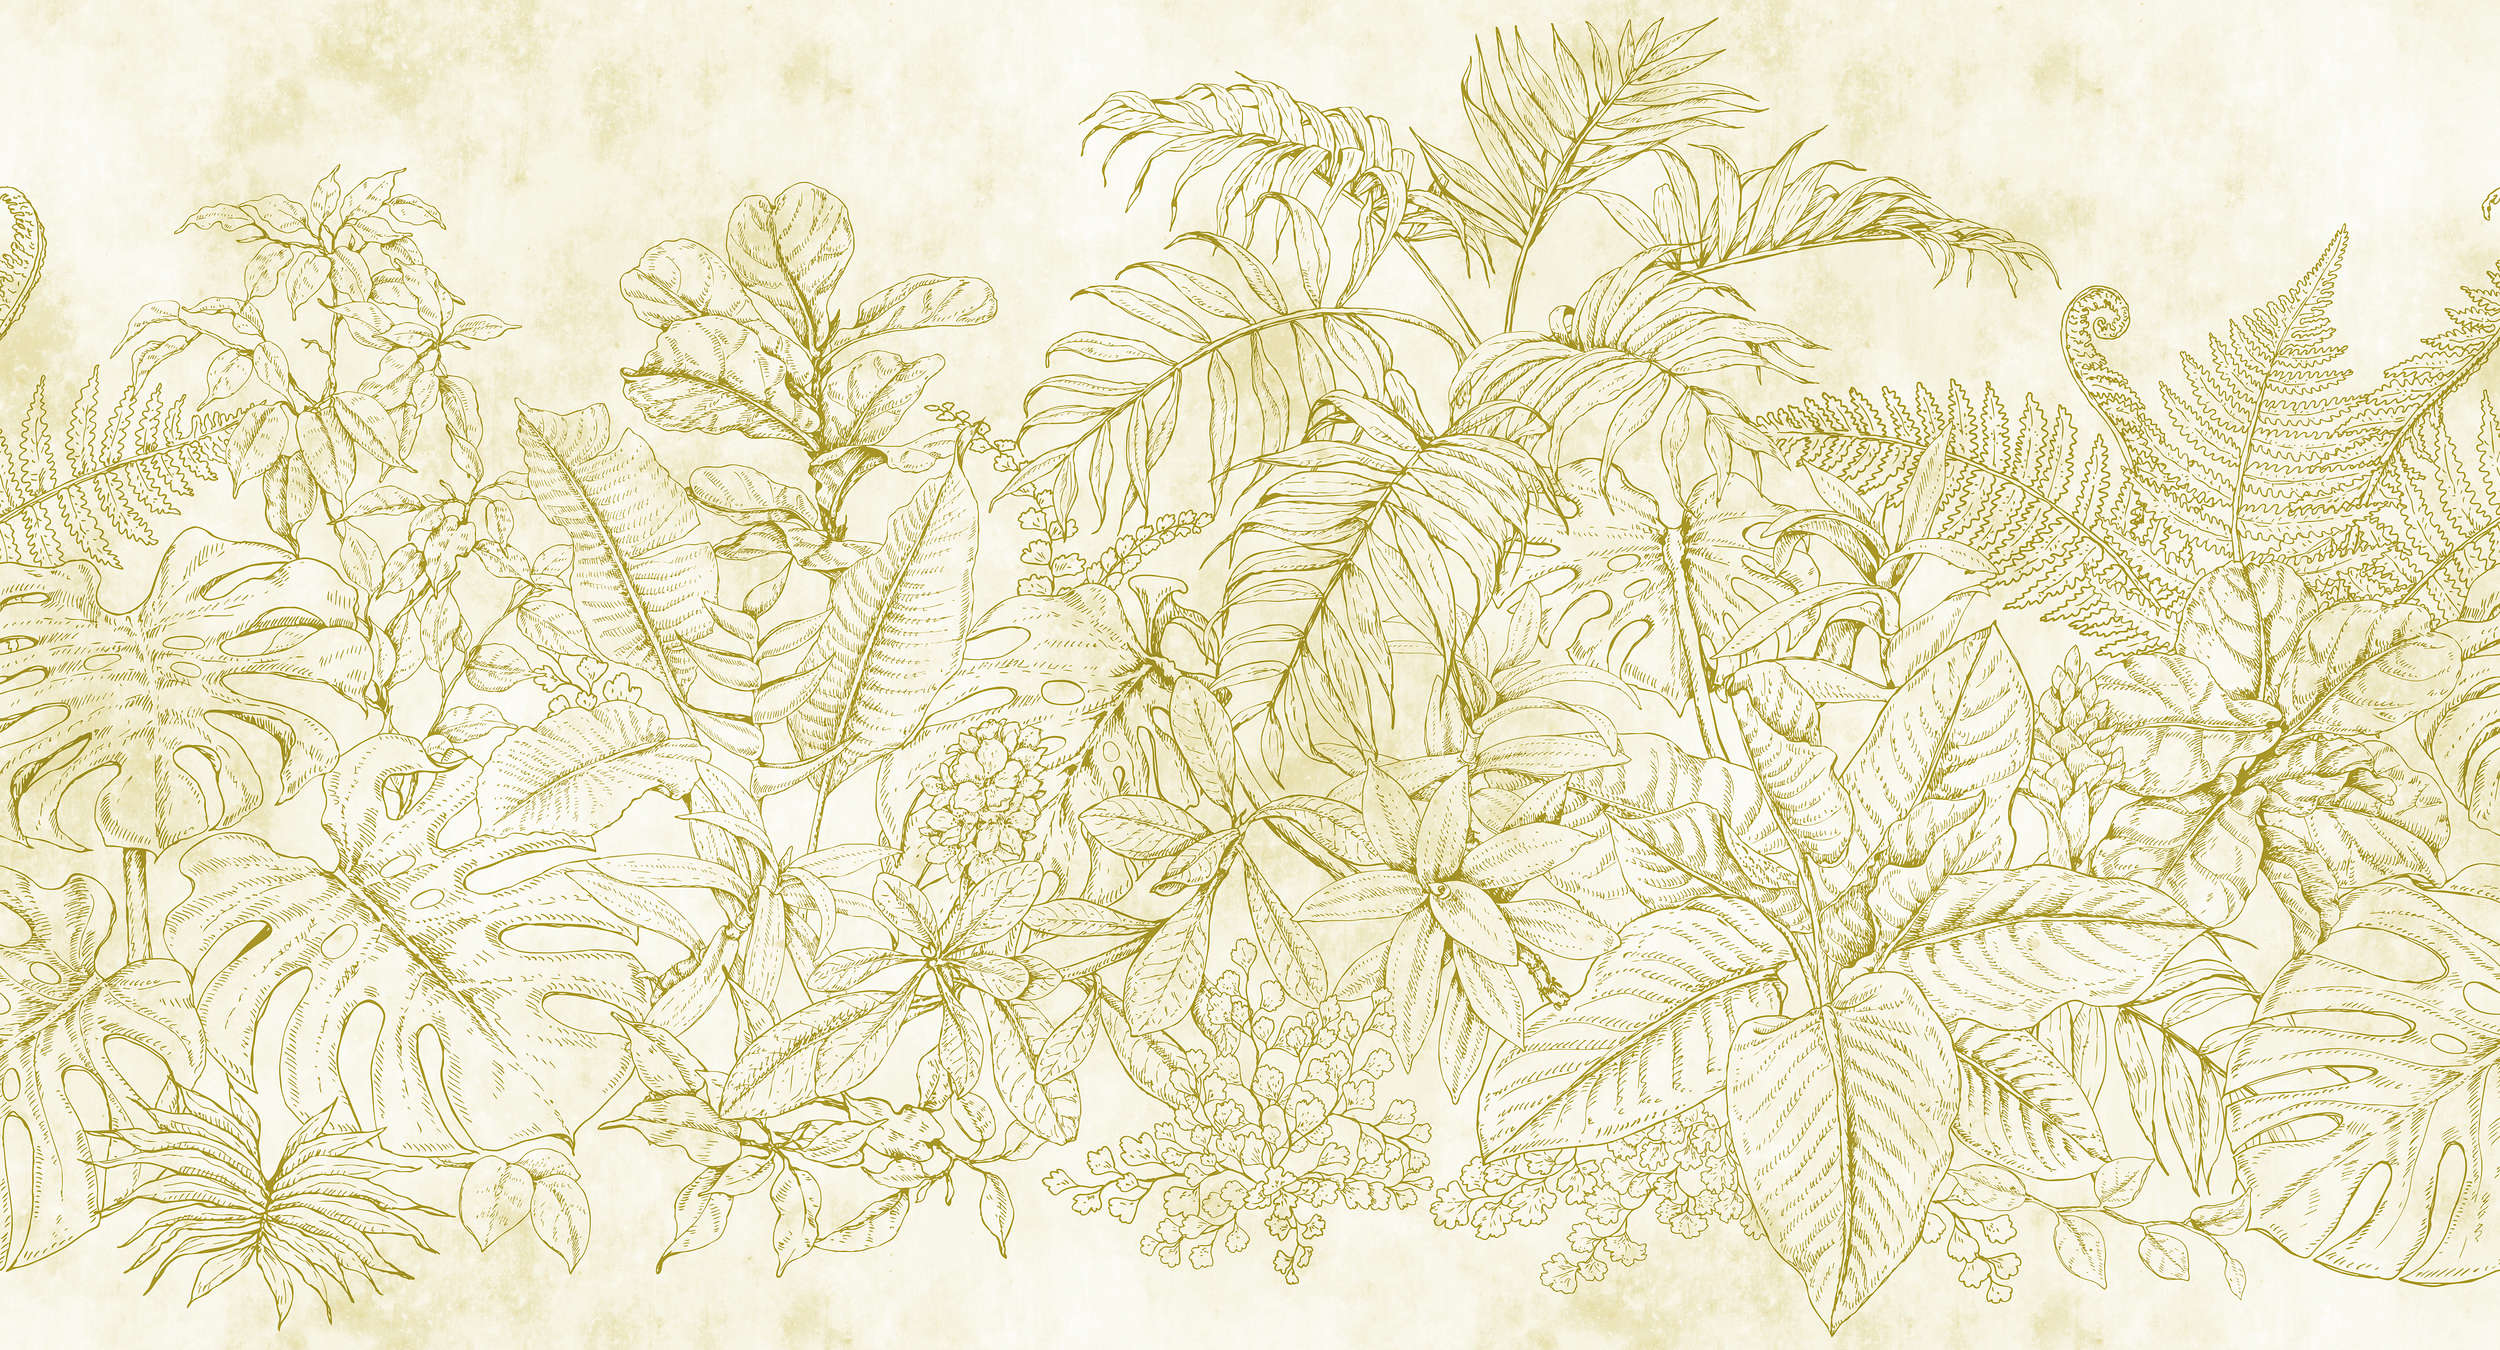             Fototapete Blumen & Blätter Muster – Creme, Beige
        